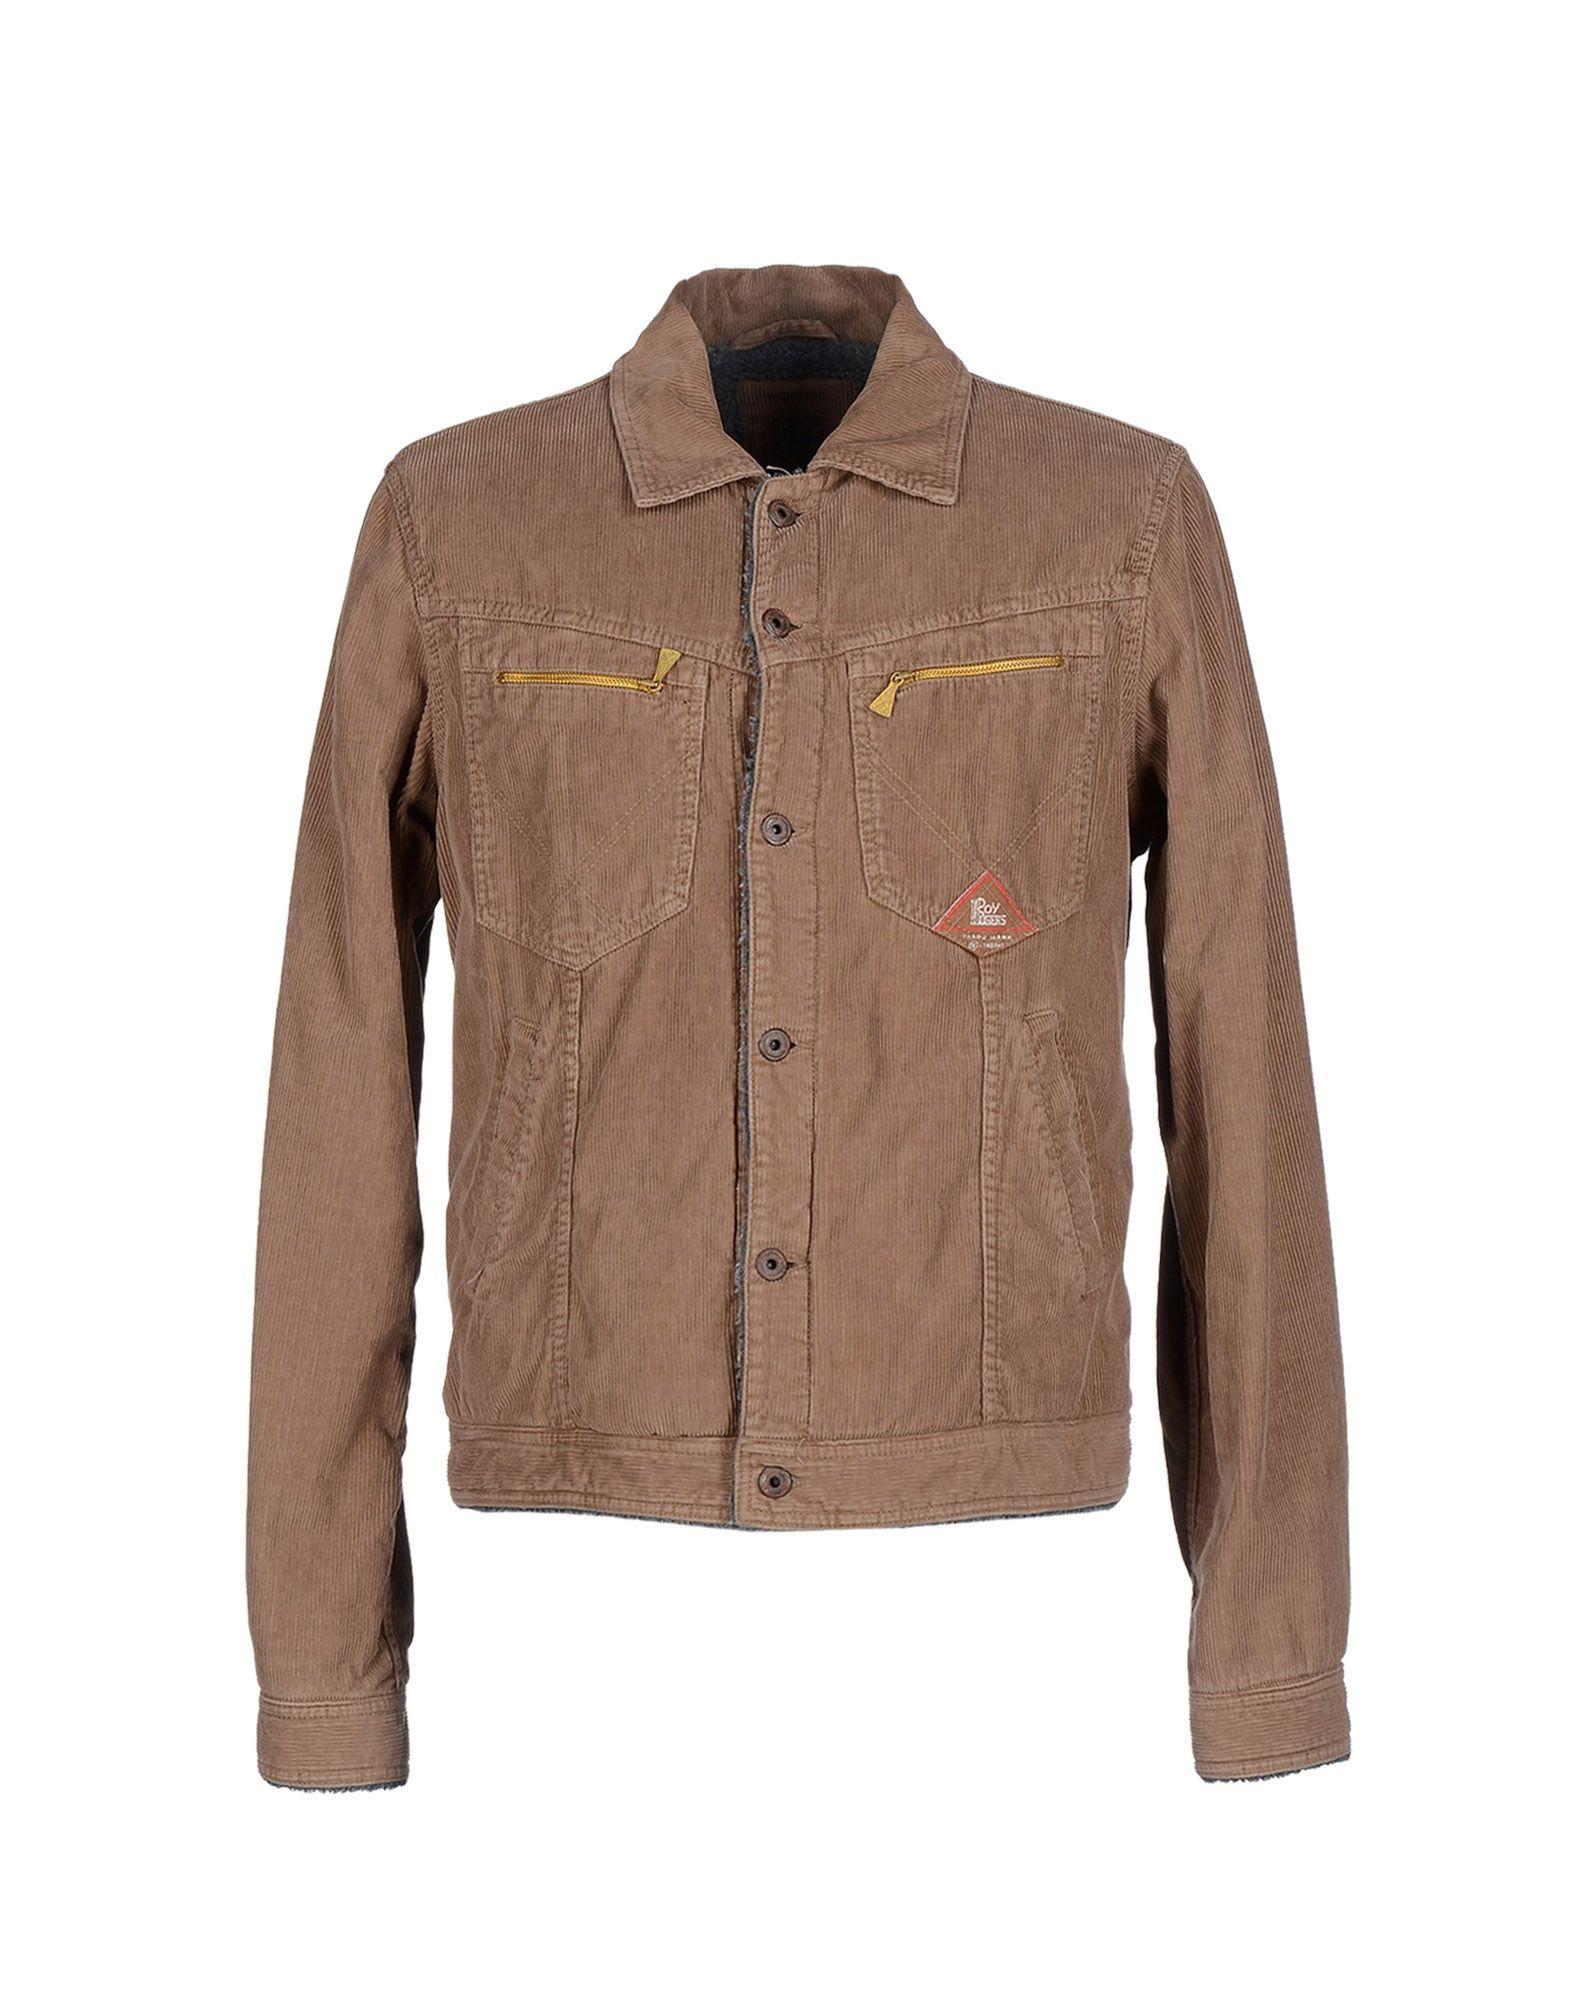 Roy Rogers Velvet Jacket in Khaki (Natural) for Men - Lyst